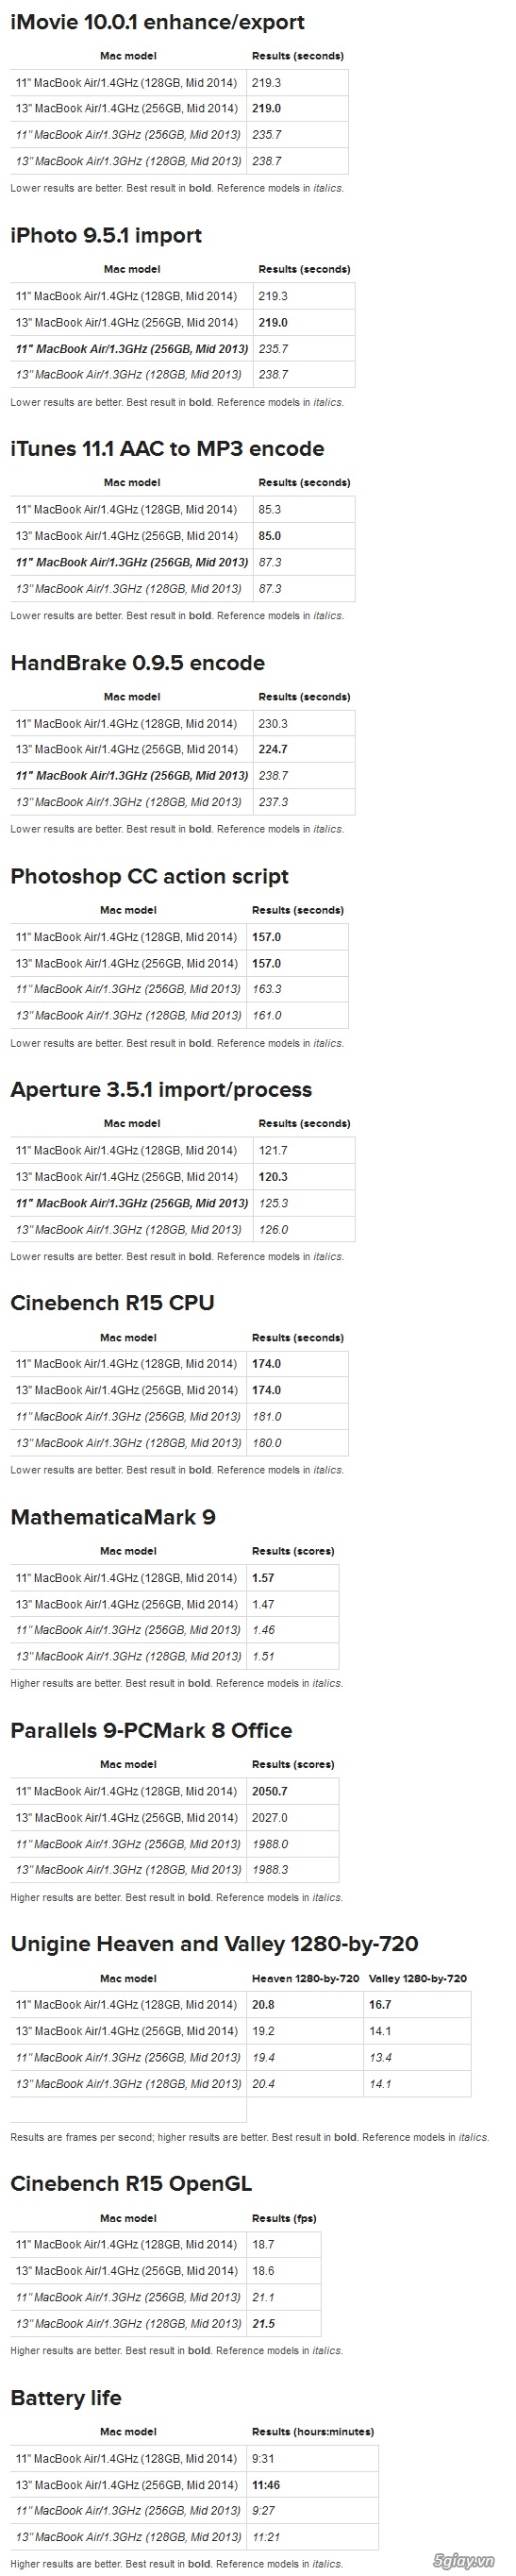 So sánh apple macbook air 2014 và 2013 qua benchmark - 4